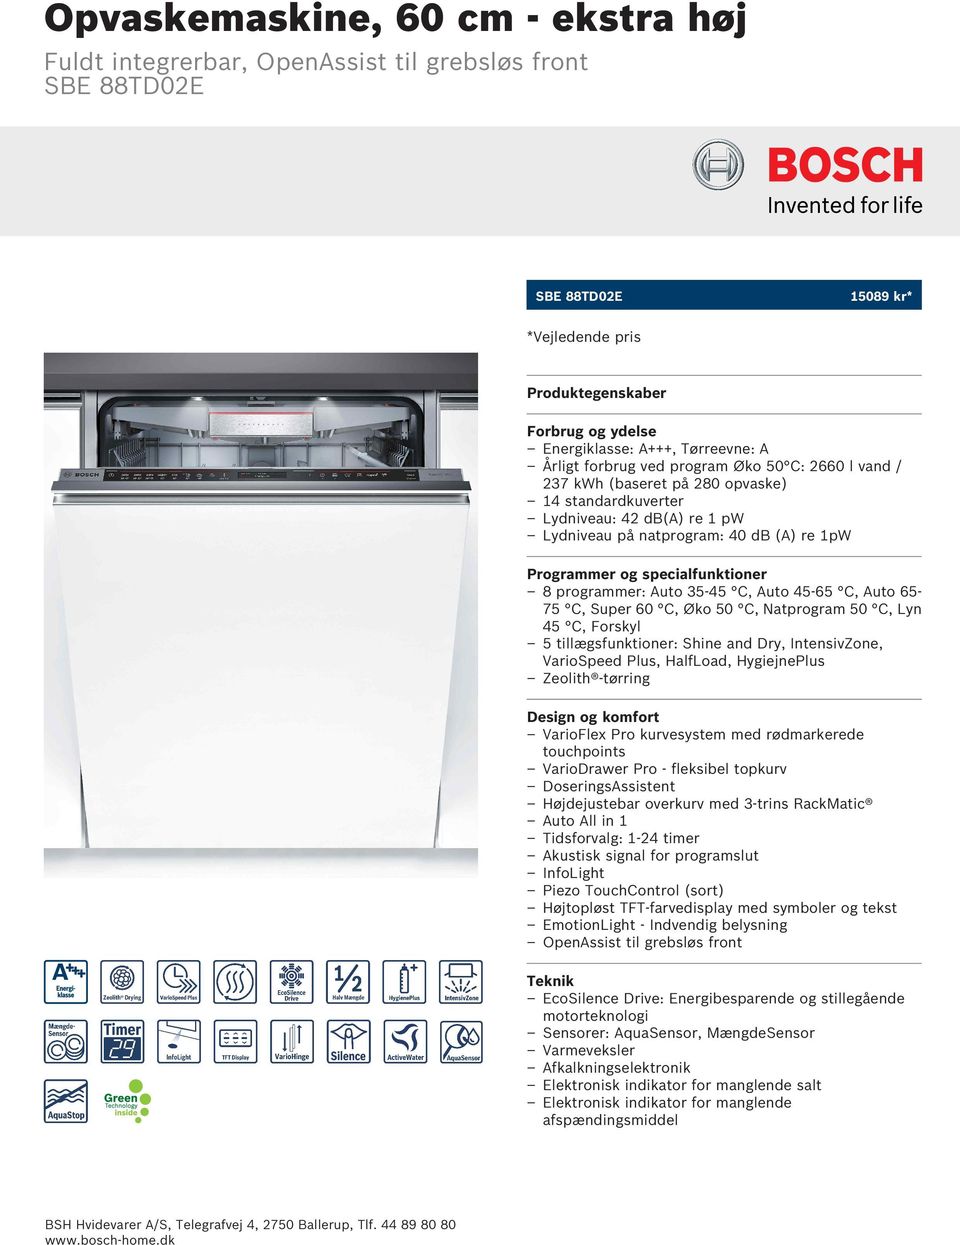 Opvaskemaskine, 60 cm - ekstra høj - PDF Free Download